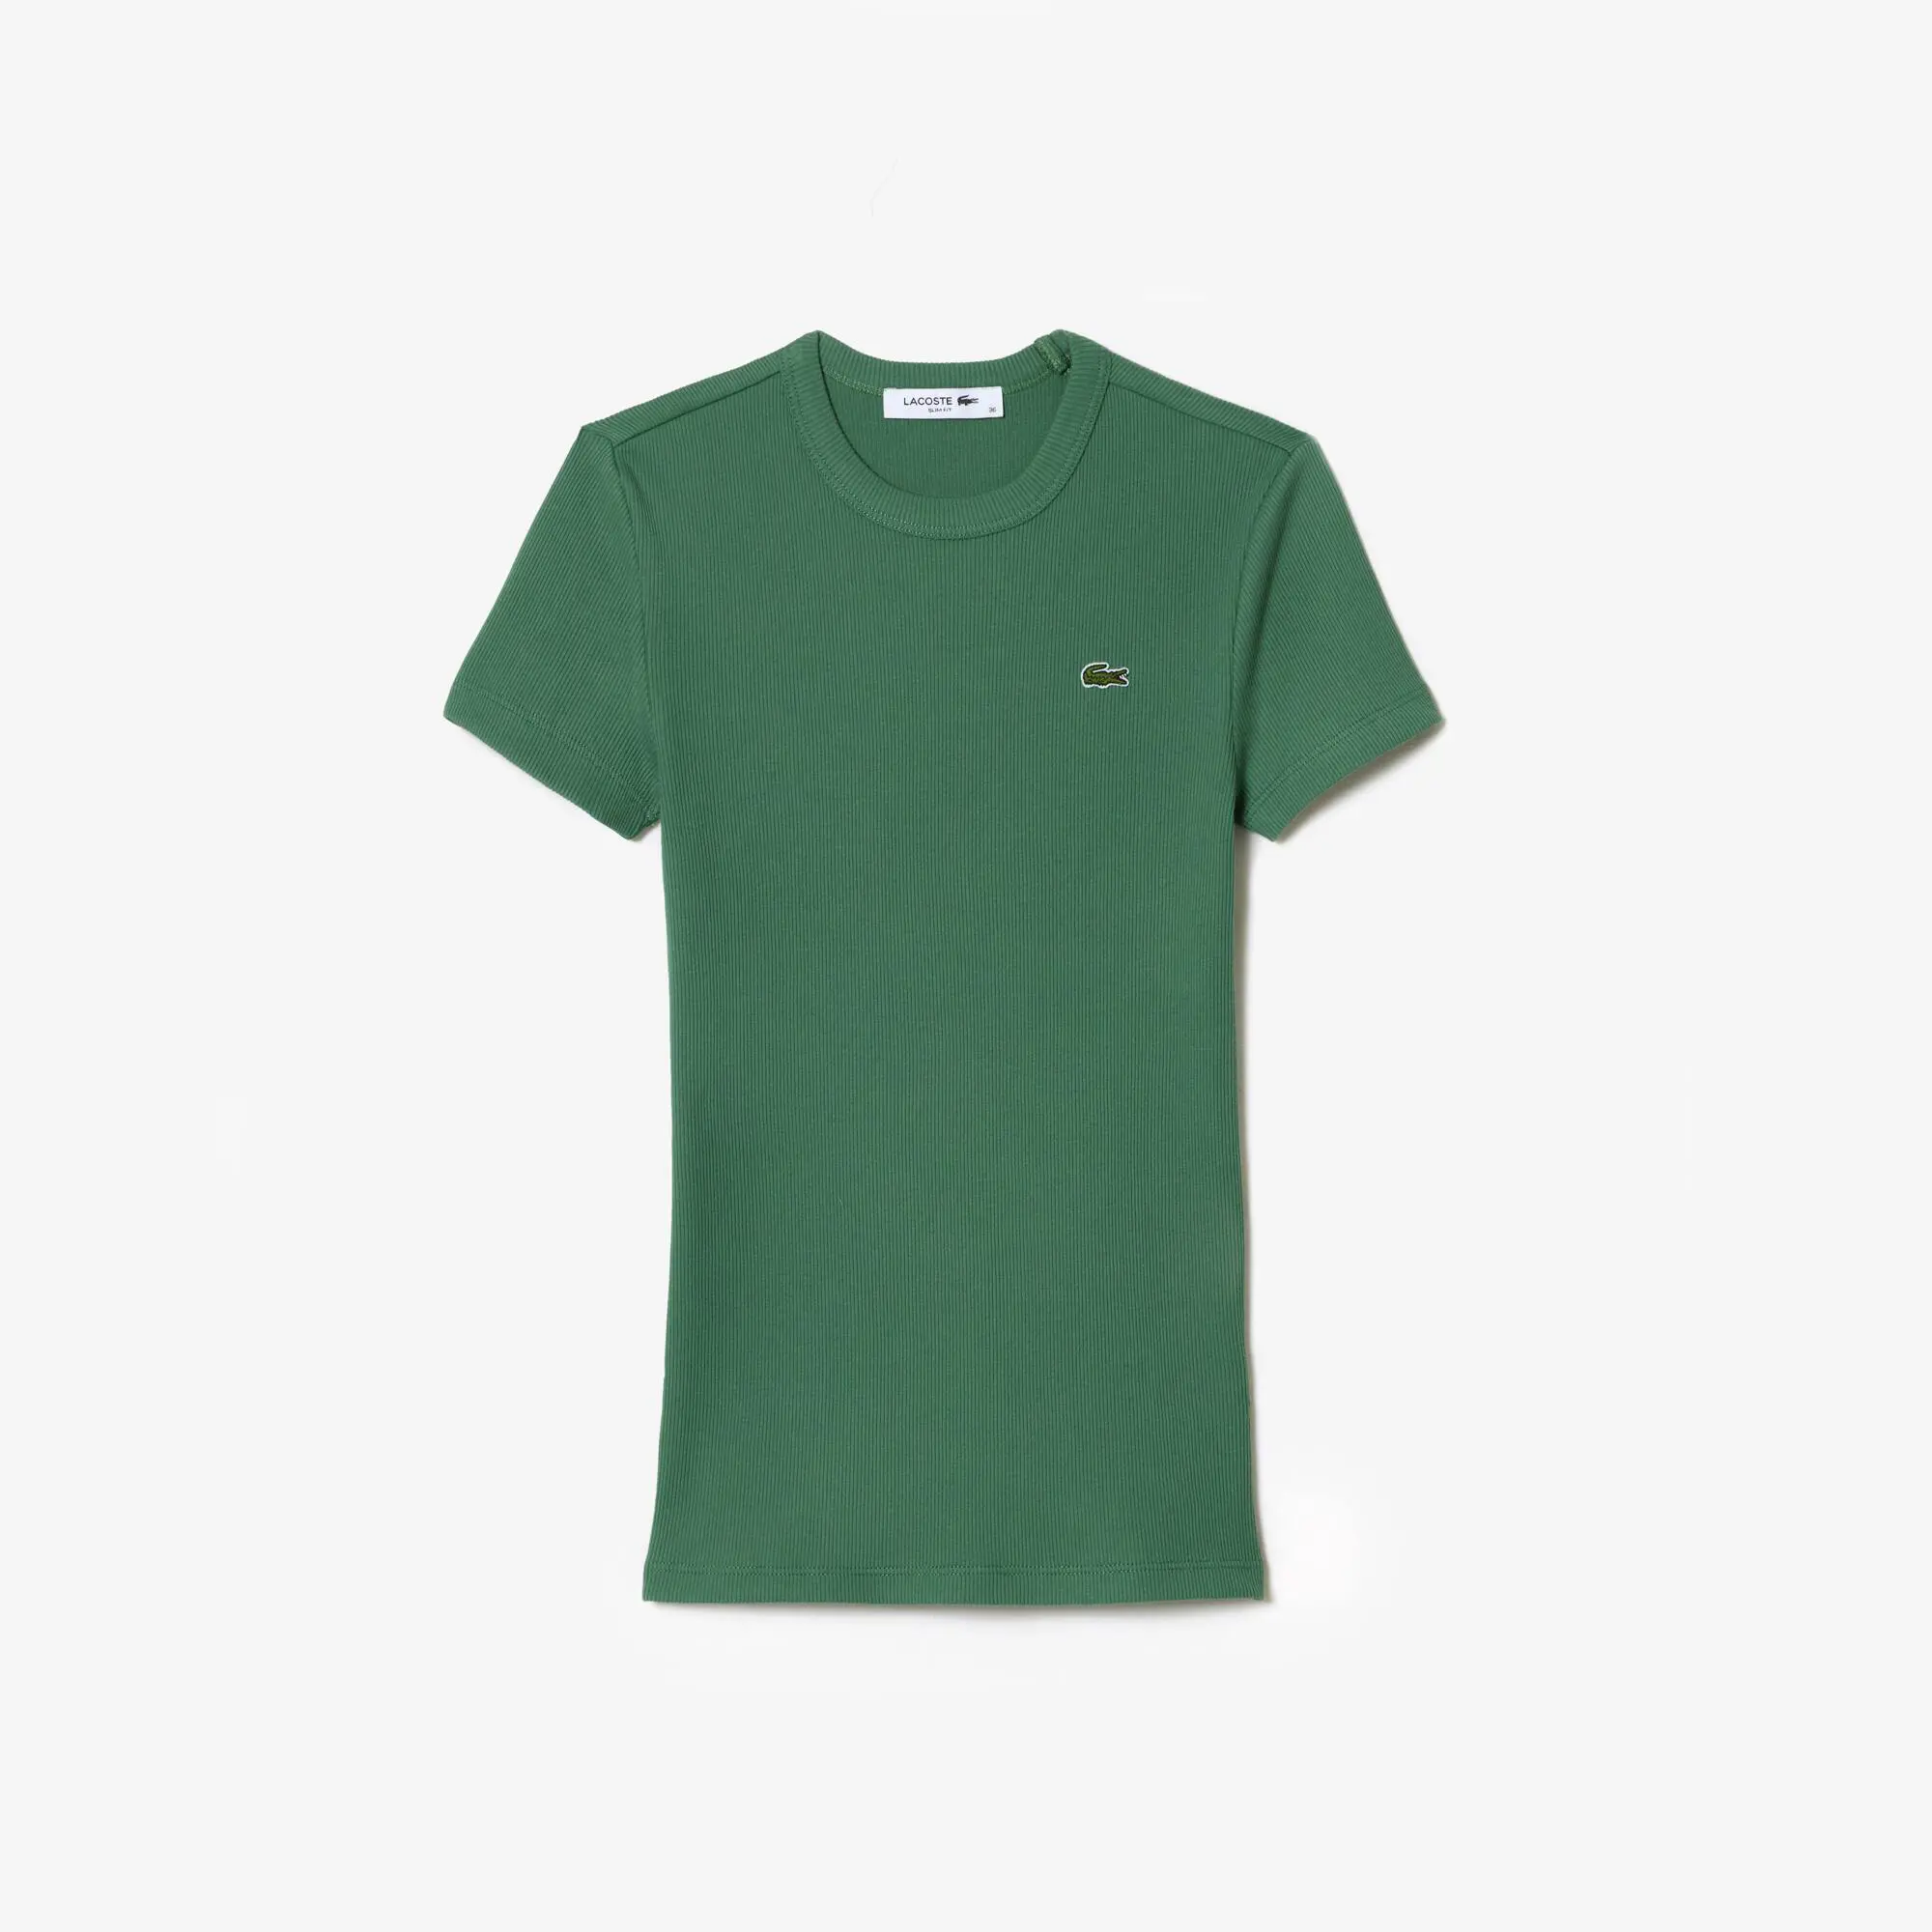 Lacoste Camiseta de mujer slim fit en algodón ecológico. 2